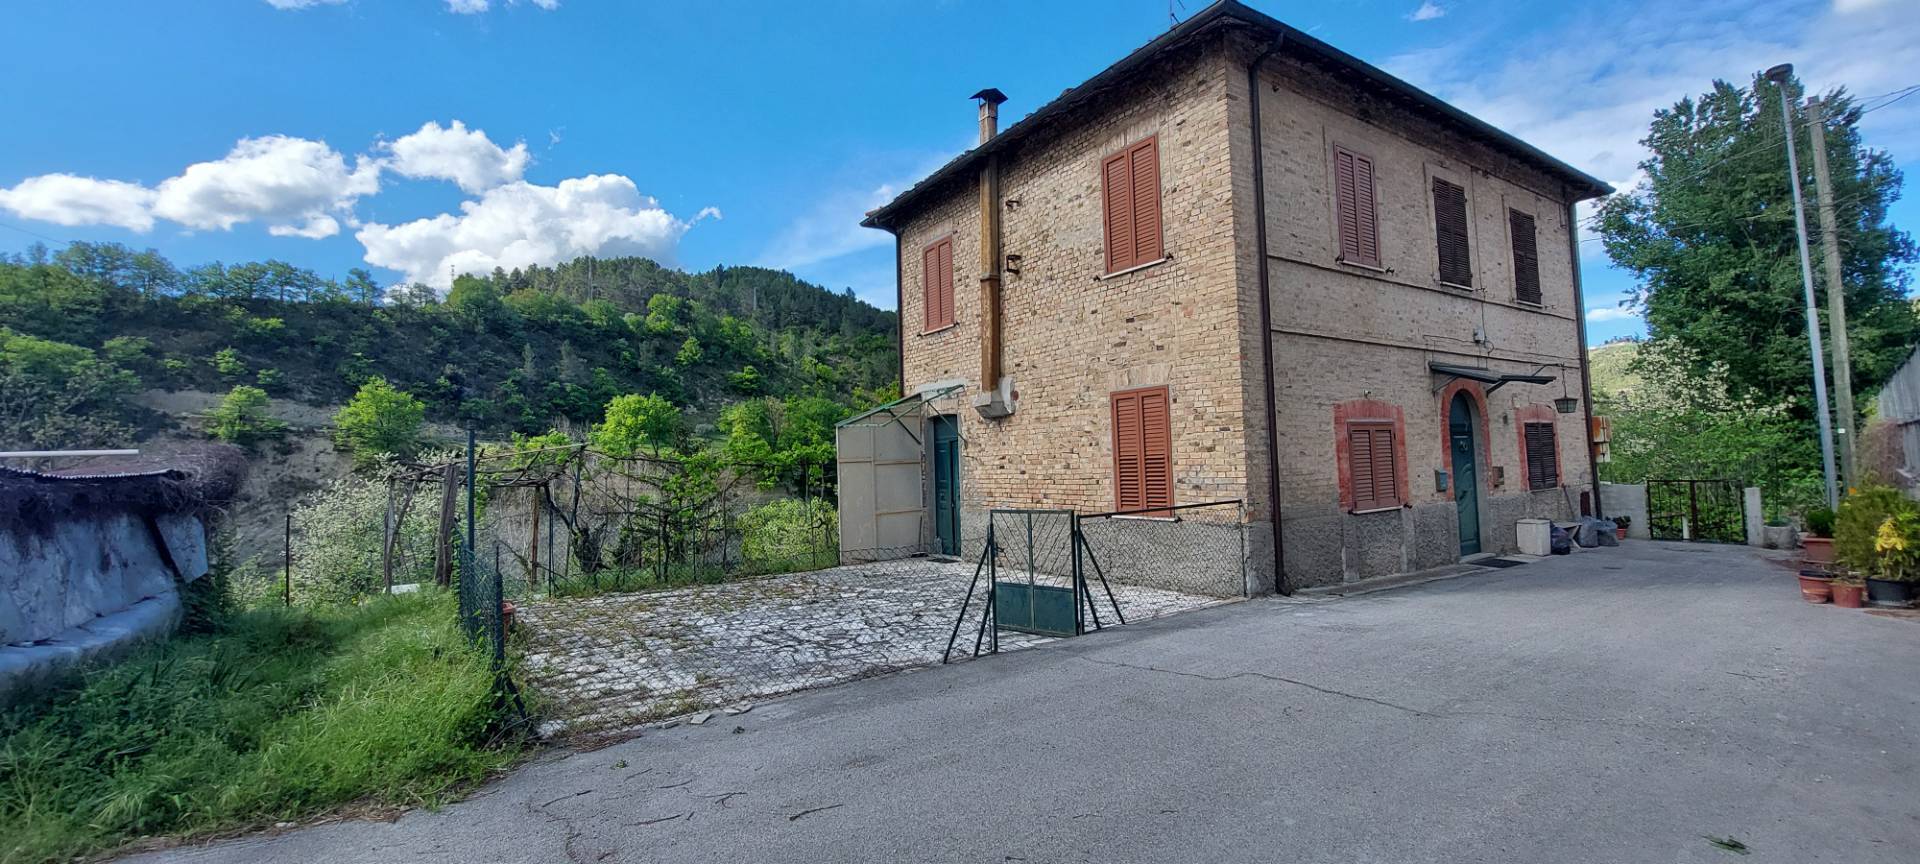 Casa indipendente in vendita, Ascoli Piceno mozzano